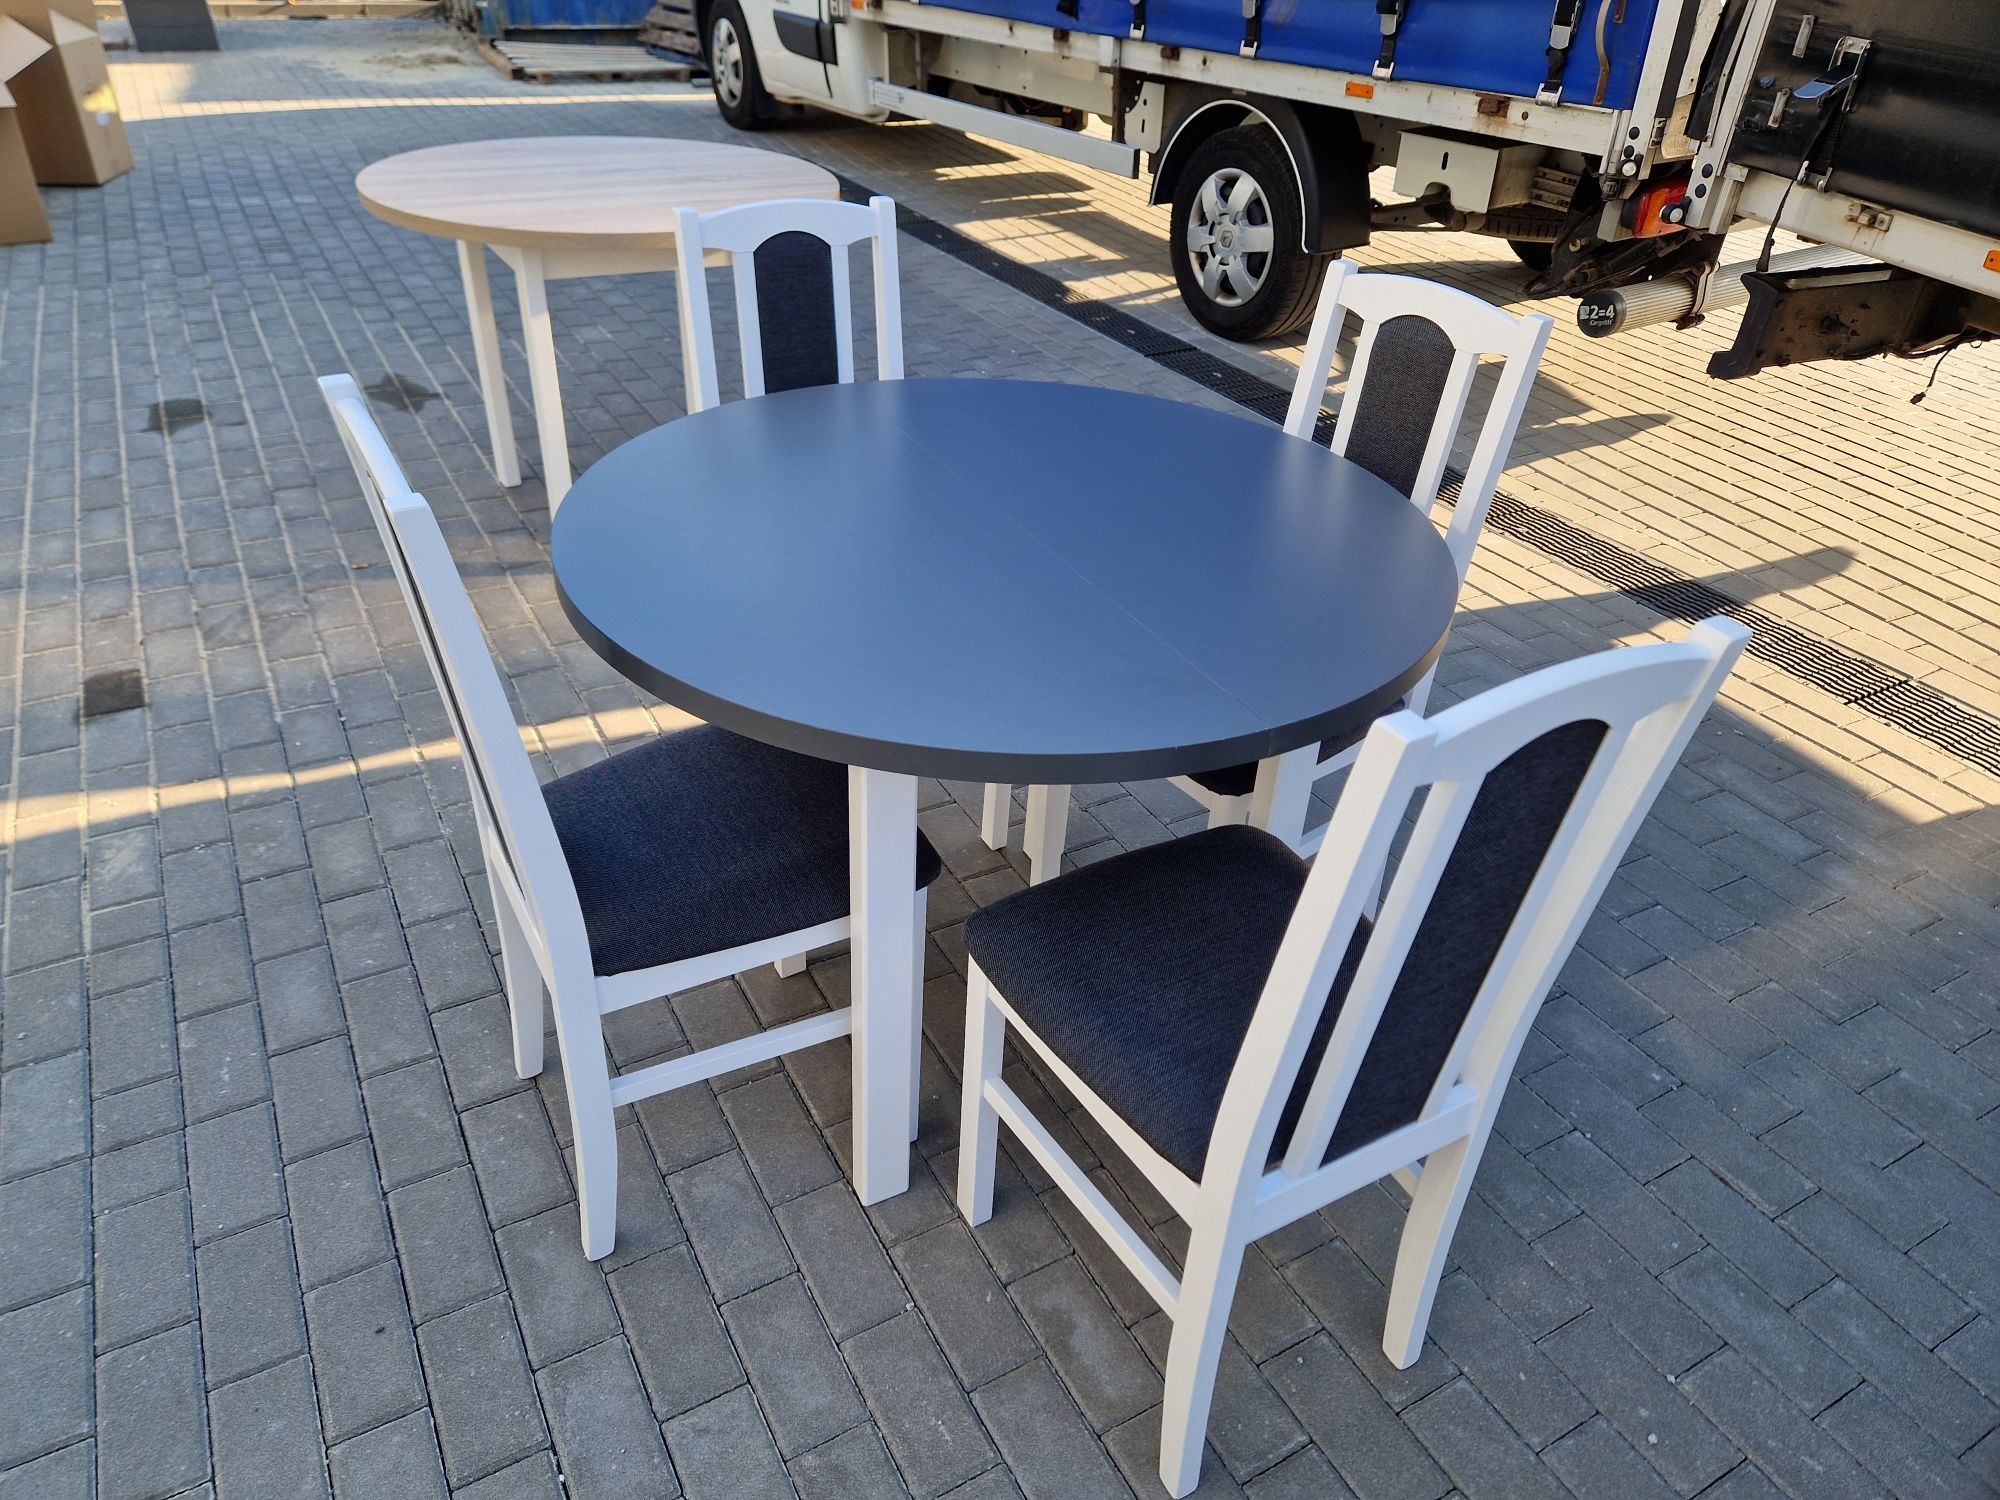 Nowe: Stół okrągły + 4 krzesła, bialy/grafit + grafit , dostawa PL